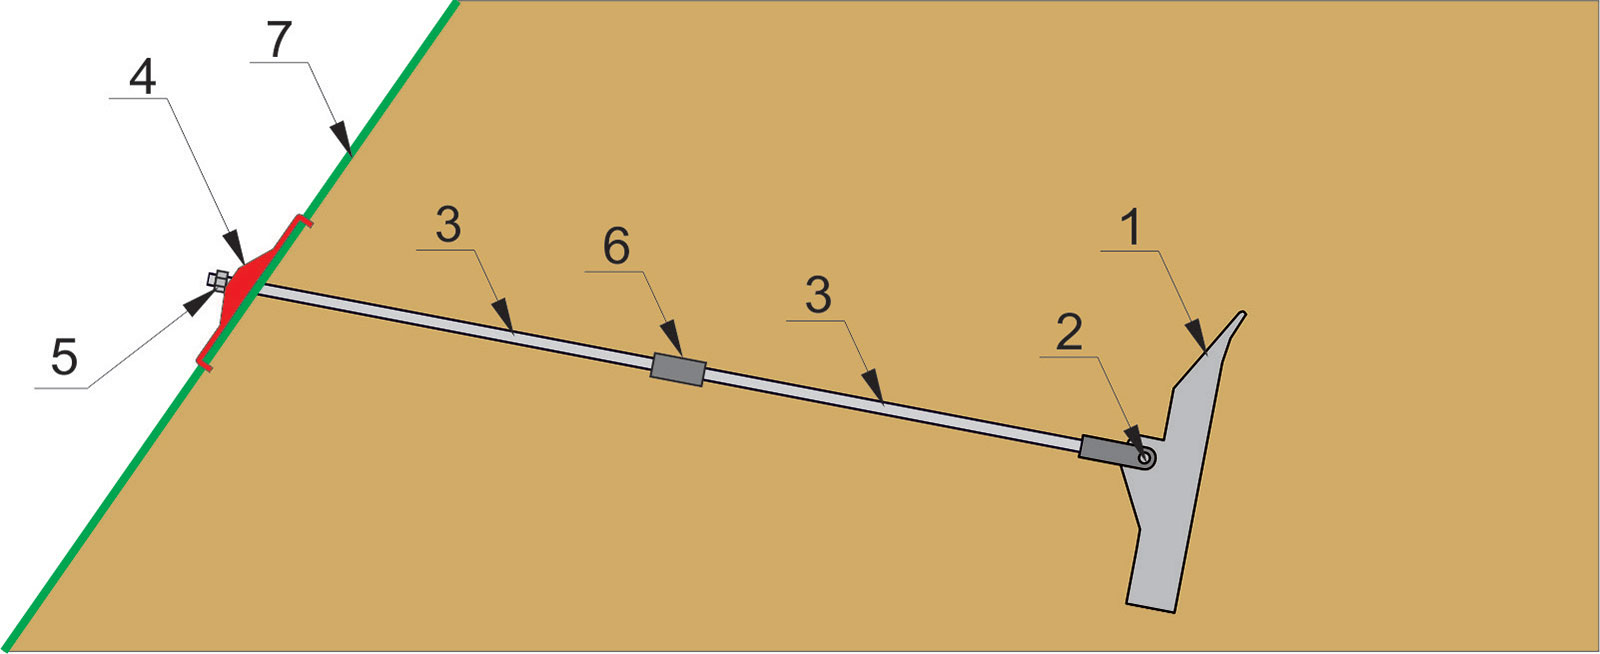 Obr. 1  Schéma mechanickej zemnej kotvy ZUBOR
1 – kotviaca hlava, 2 – kĺbové spojenie, 3 – kotevná tyč, 4 – roznášacia platňa, 5 – poistná matica, 6 – spojovník, 7 – povrch zabezpečovanej konštrukcie
